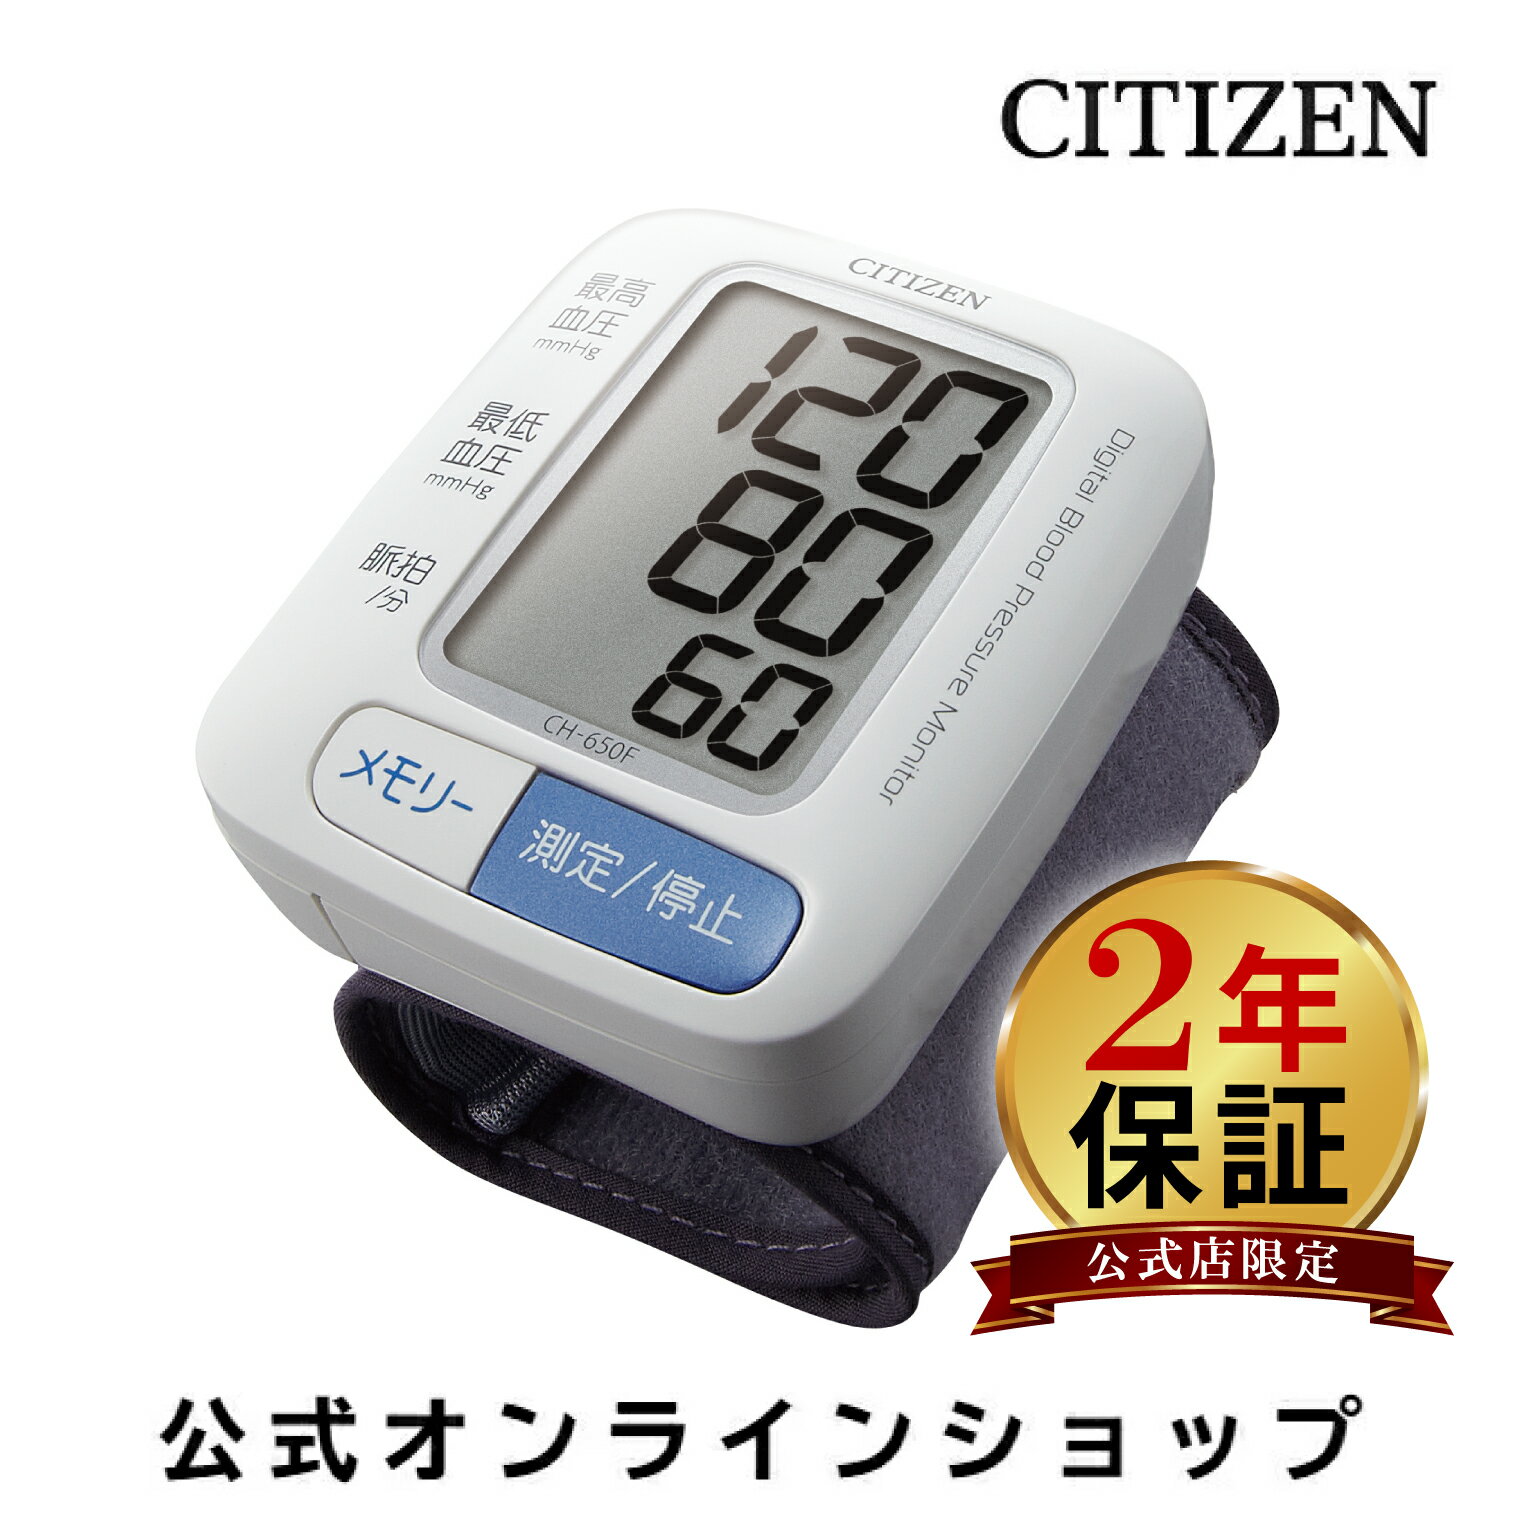 【2年保証】 シチズン 血圧計 ch 650f 